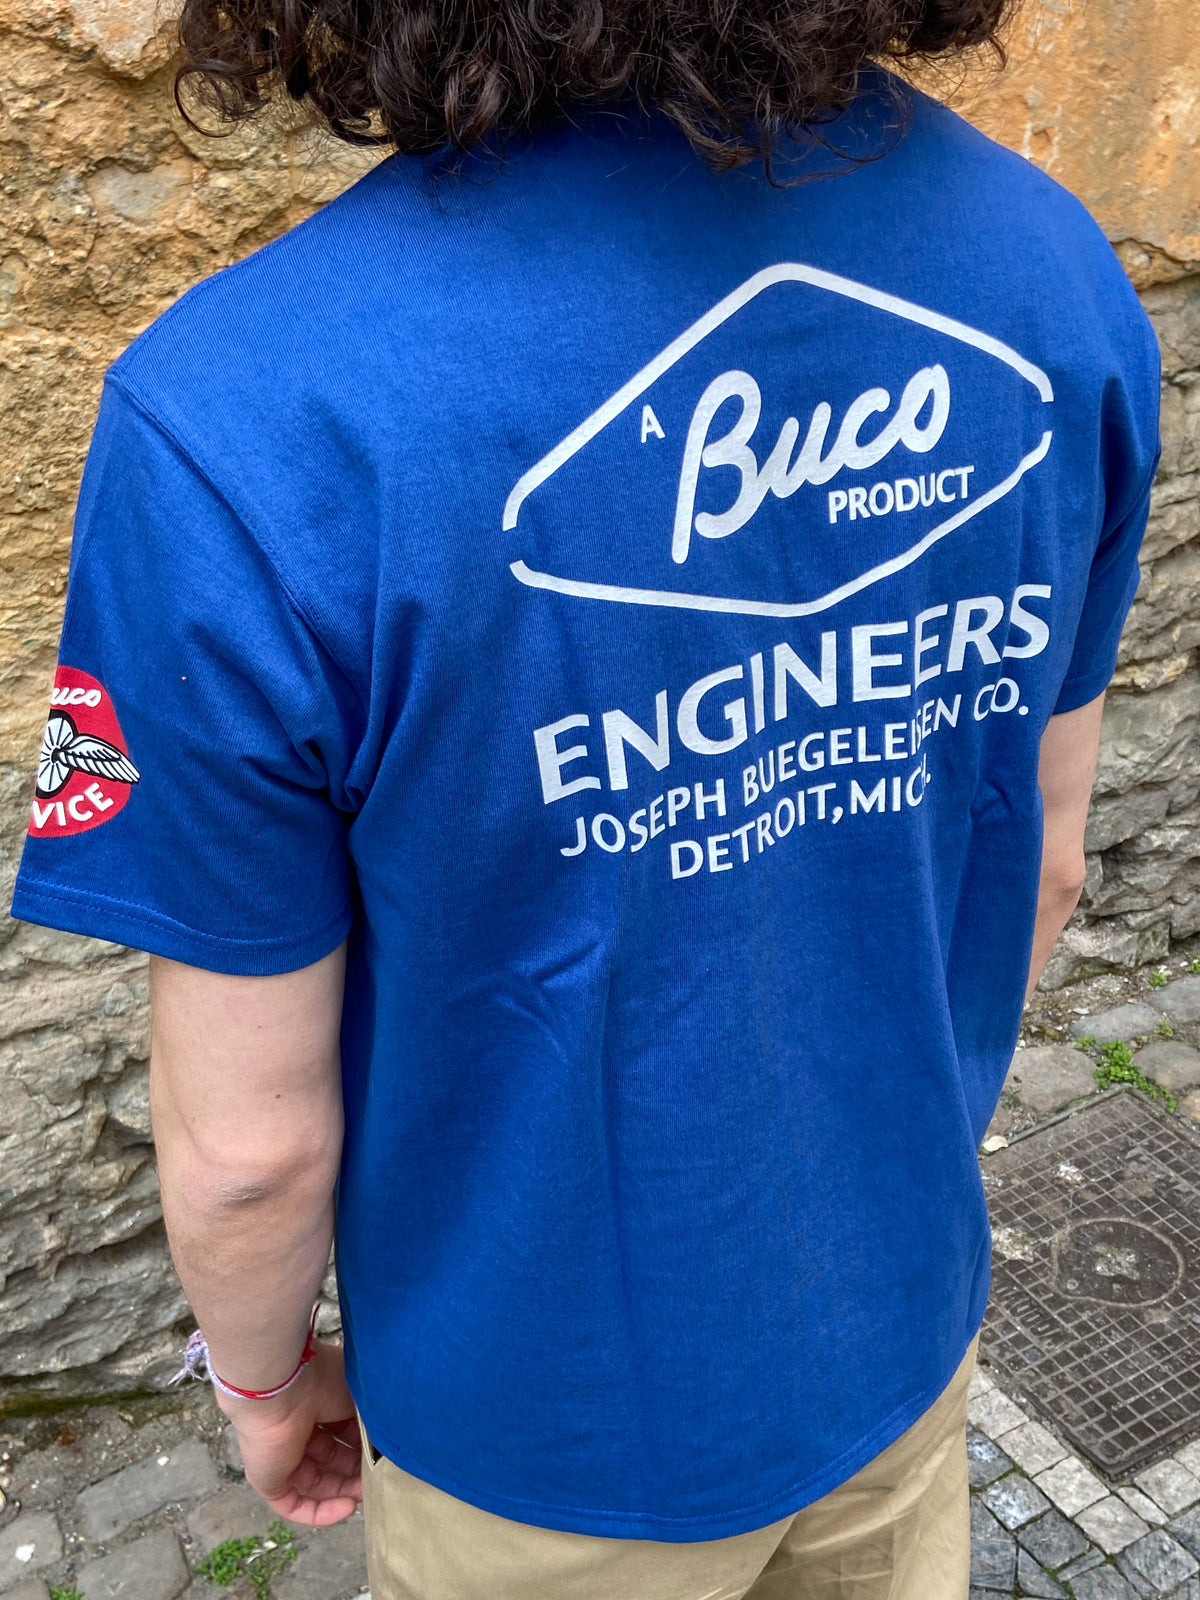 Buco BC21002 Buco Tee - Engineers